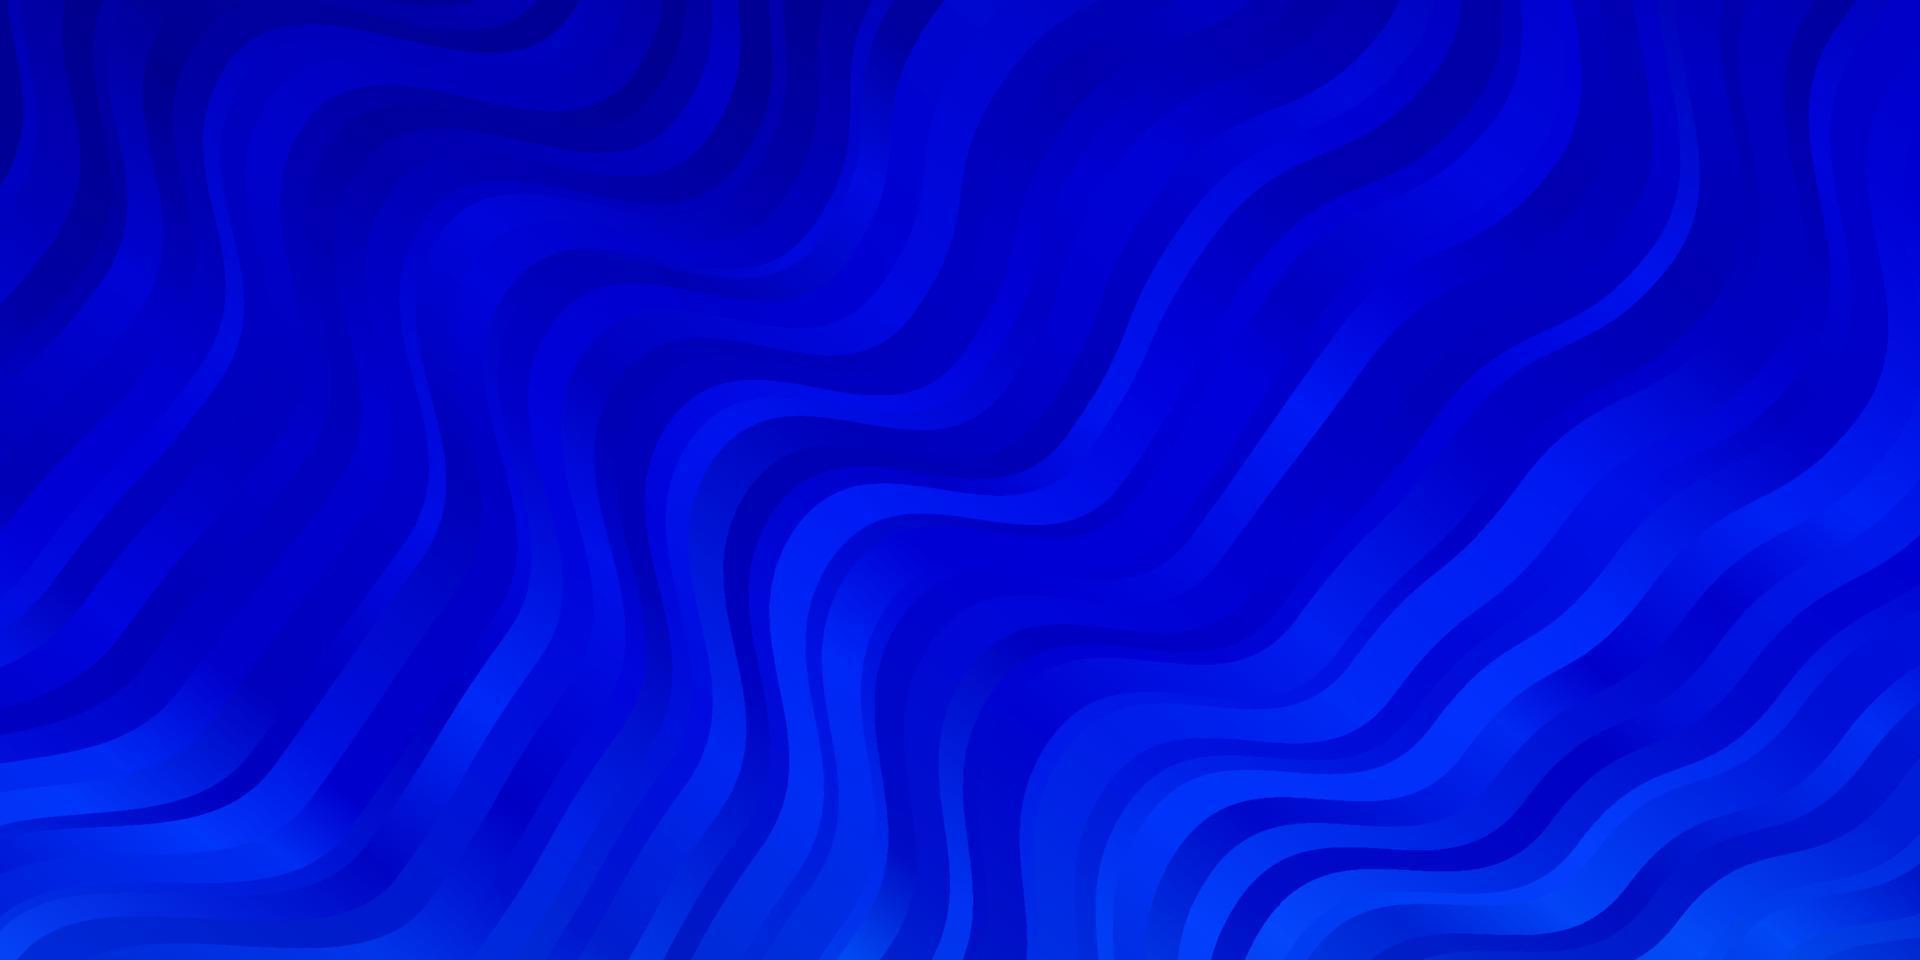 textura de vector azul claro con arco circular.